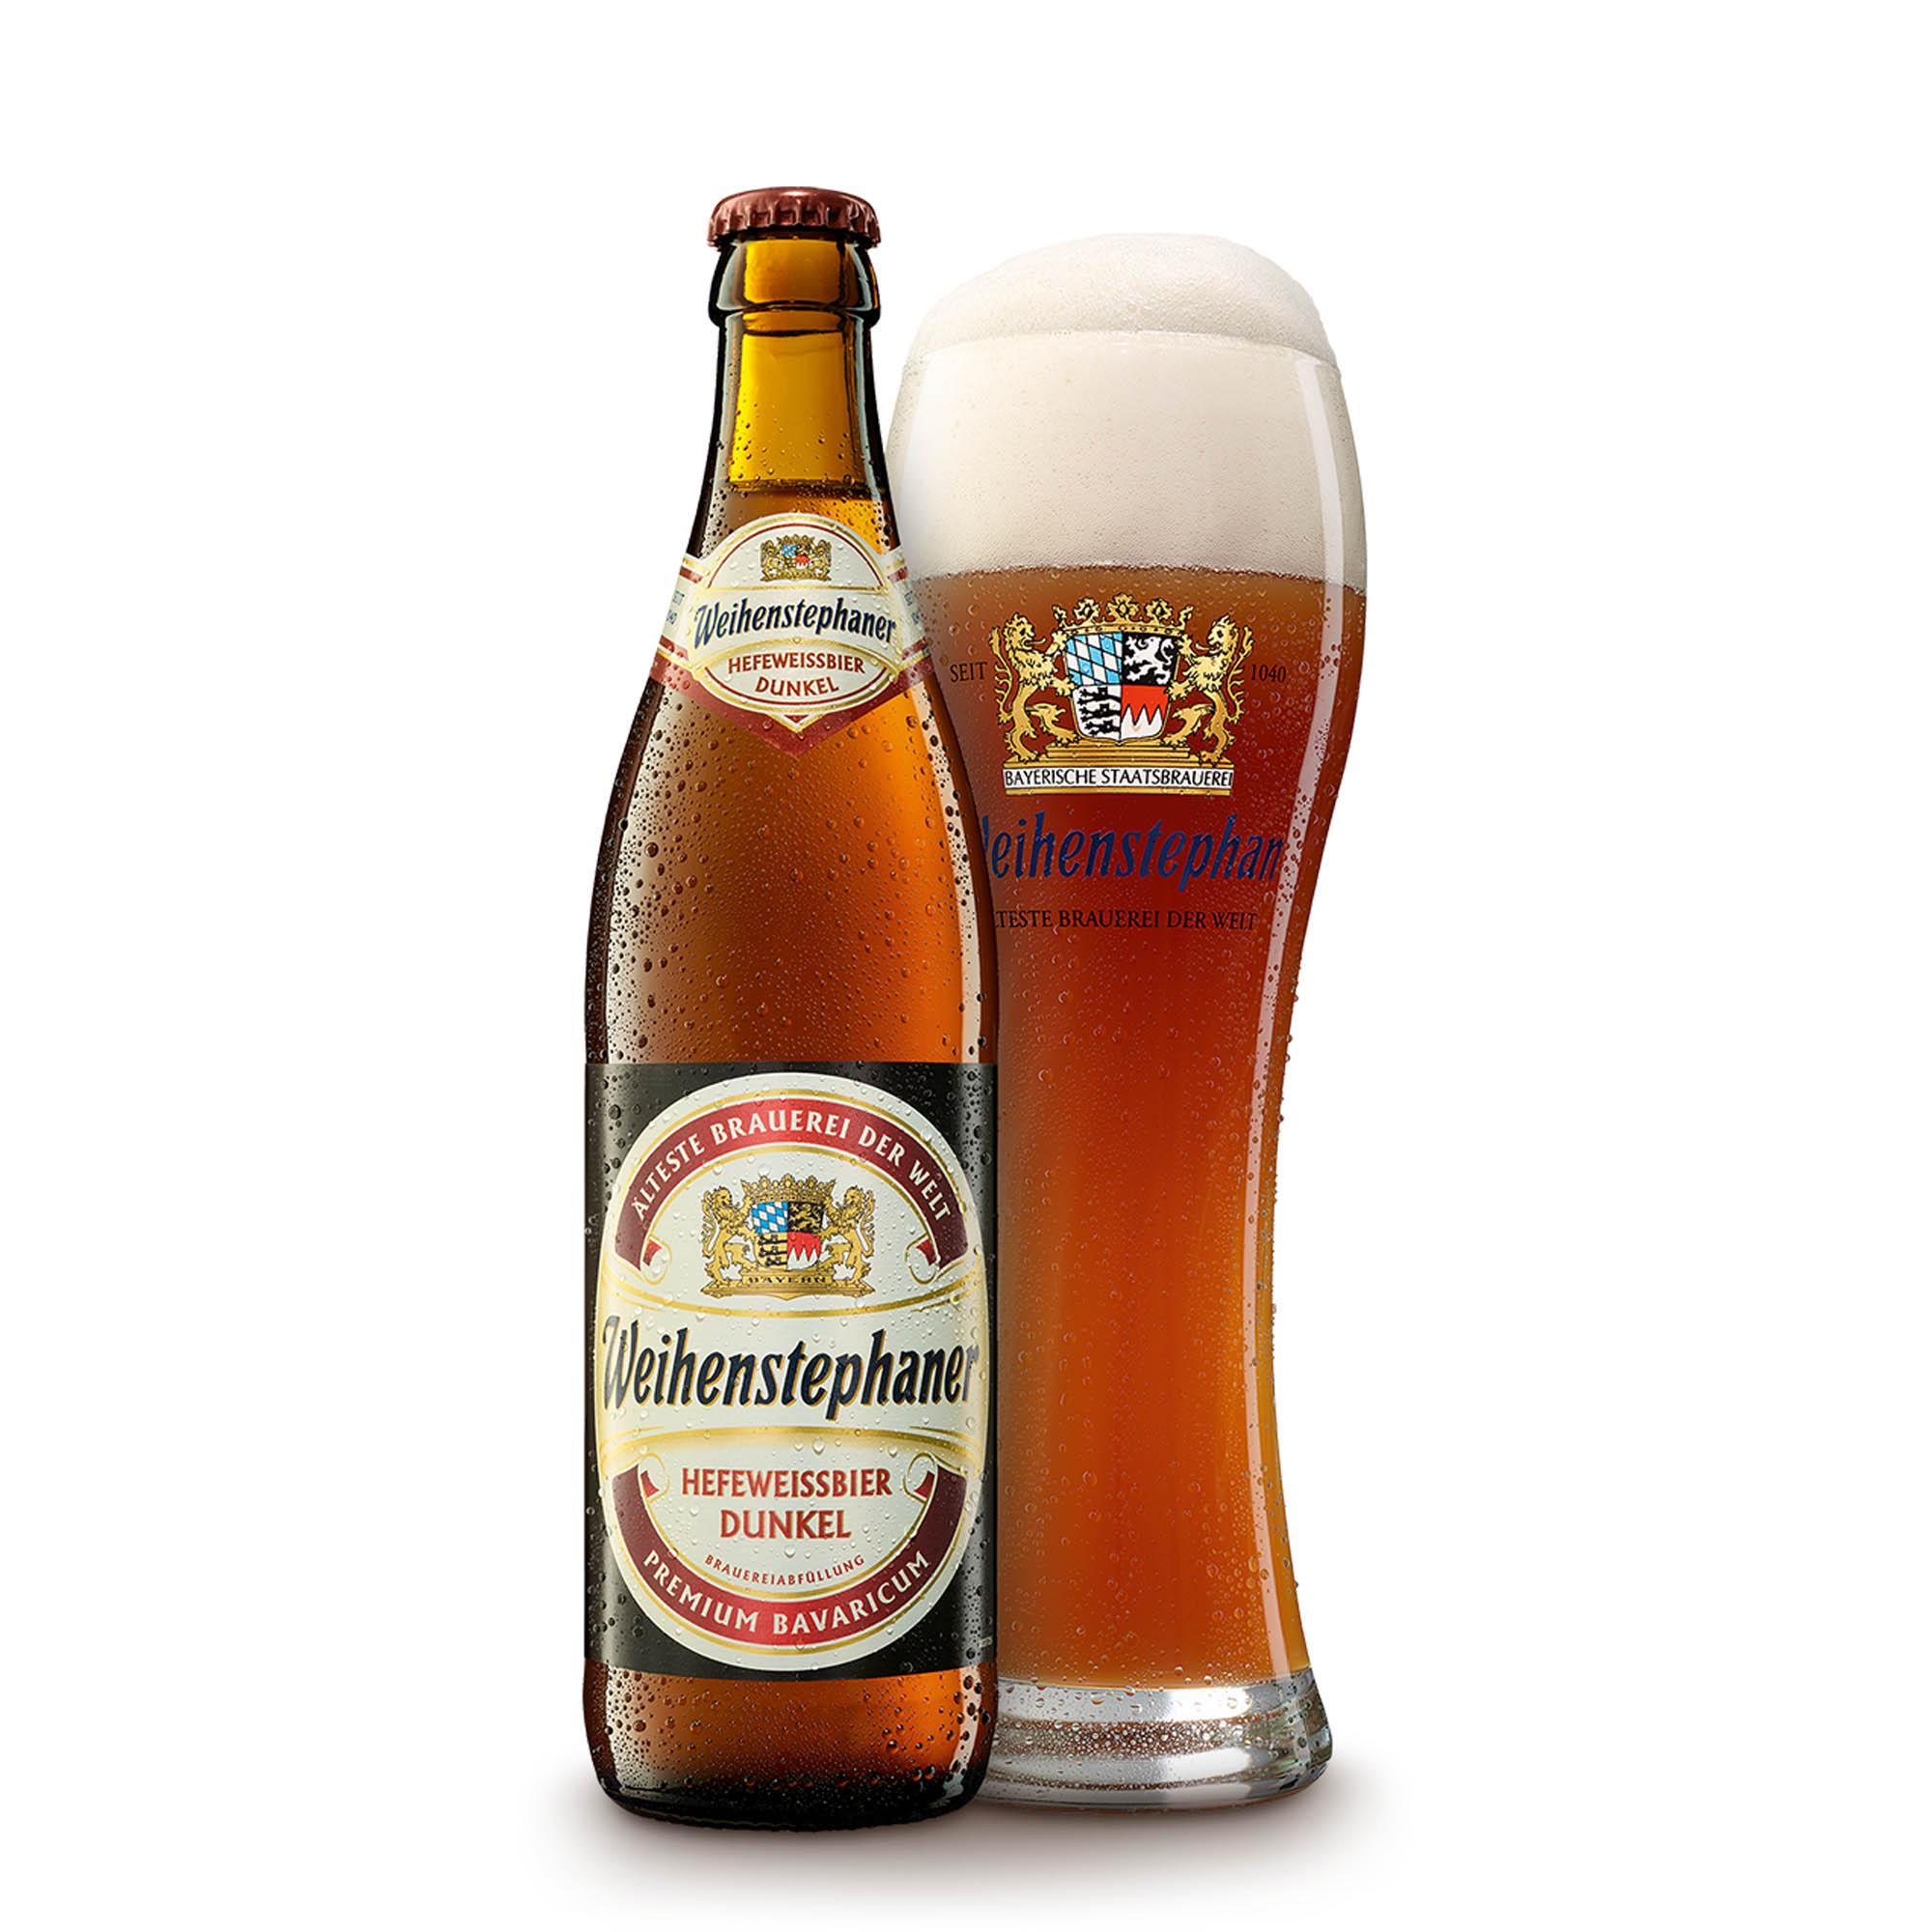 Bavaria là vùng sản xuất bia nổi tiếng của Đức